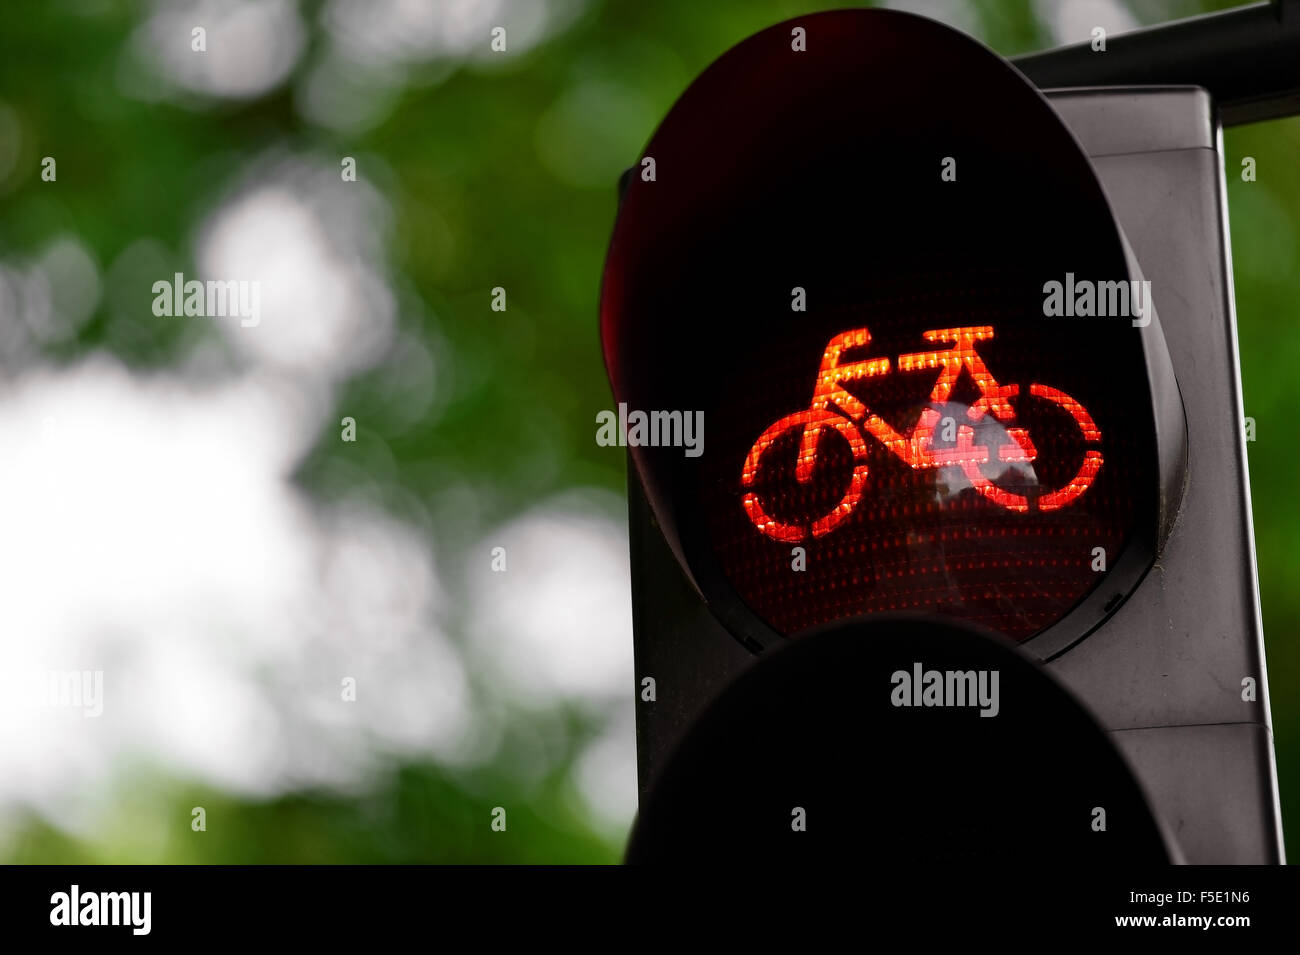 Dettaglio delle riprese con una bicicletta traffico commutato di luce di colore rosso Foto Stock